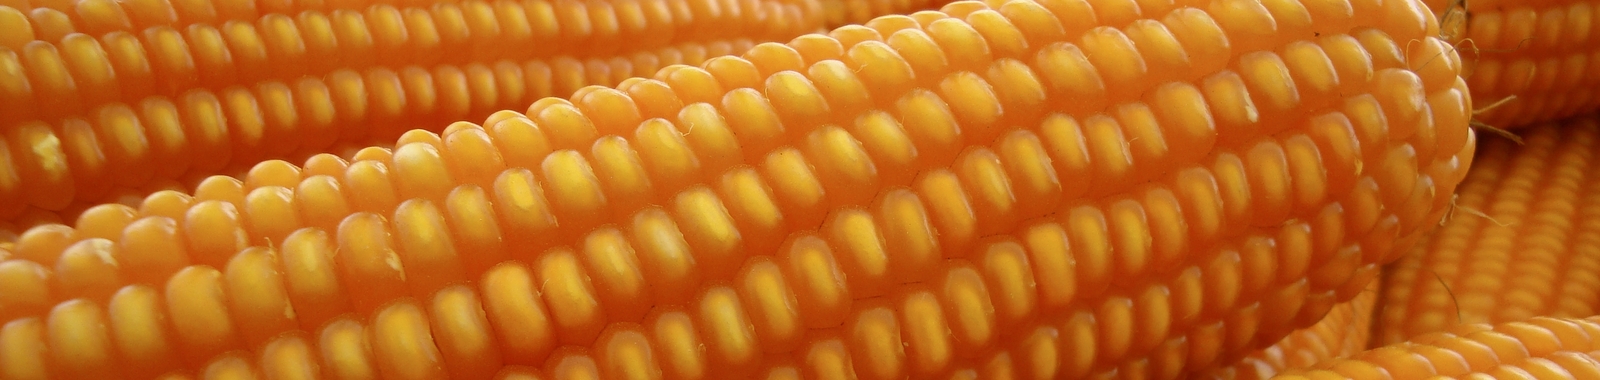 Fitosaniad del maíz